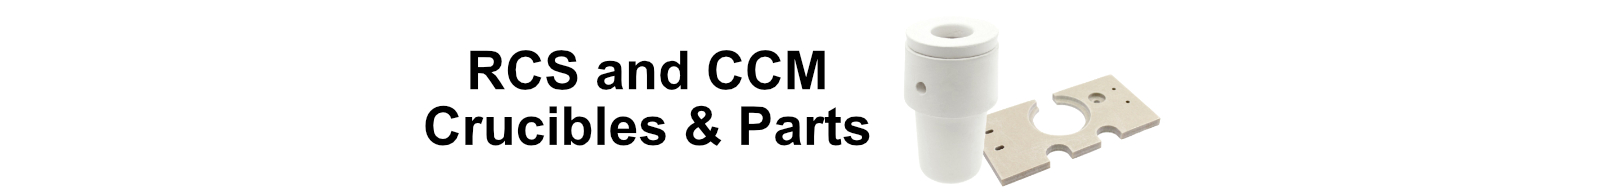 RCS & CCM Crucibles & Parts